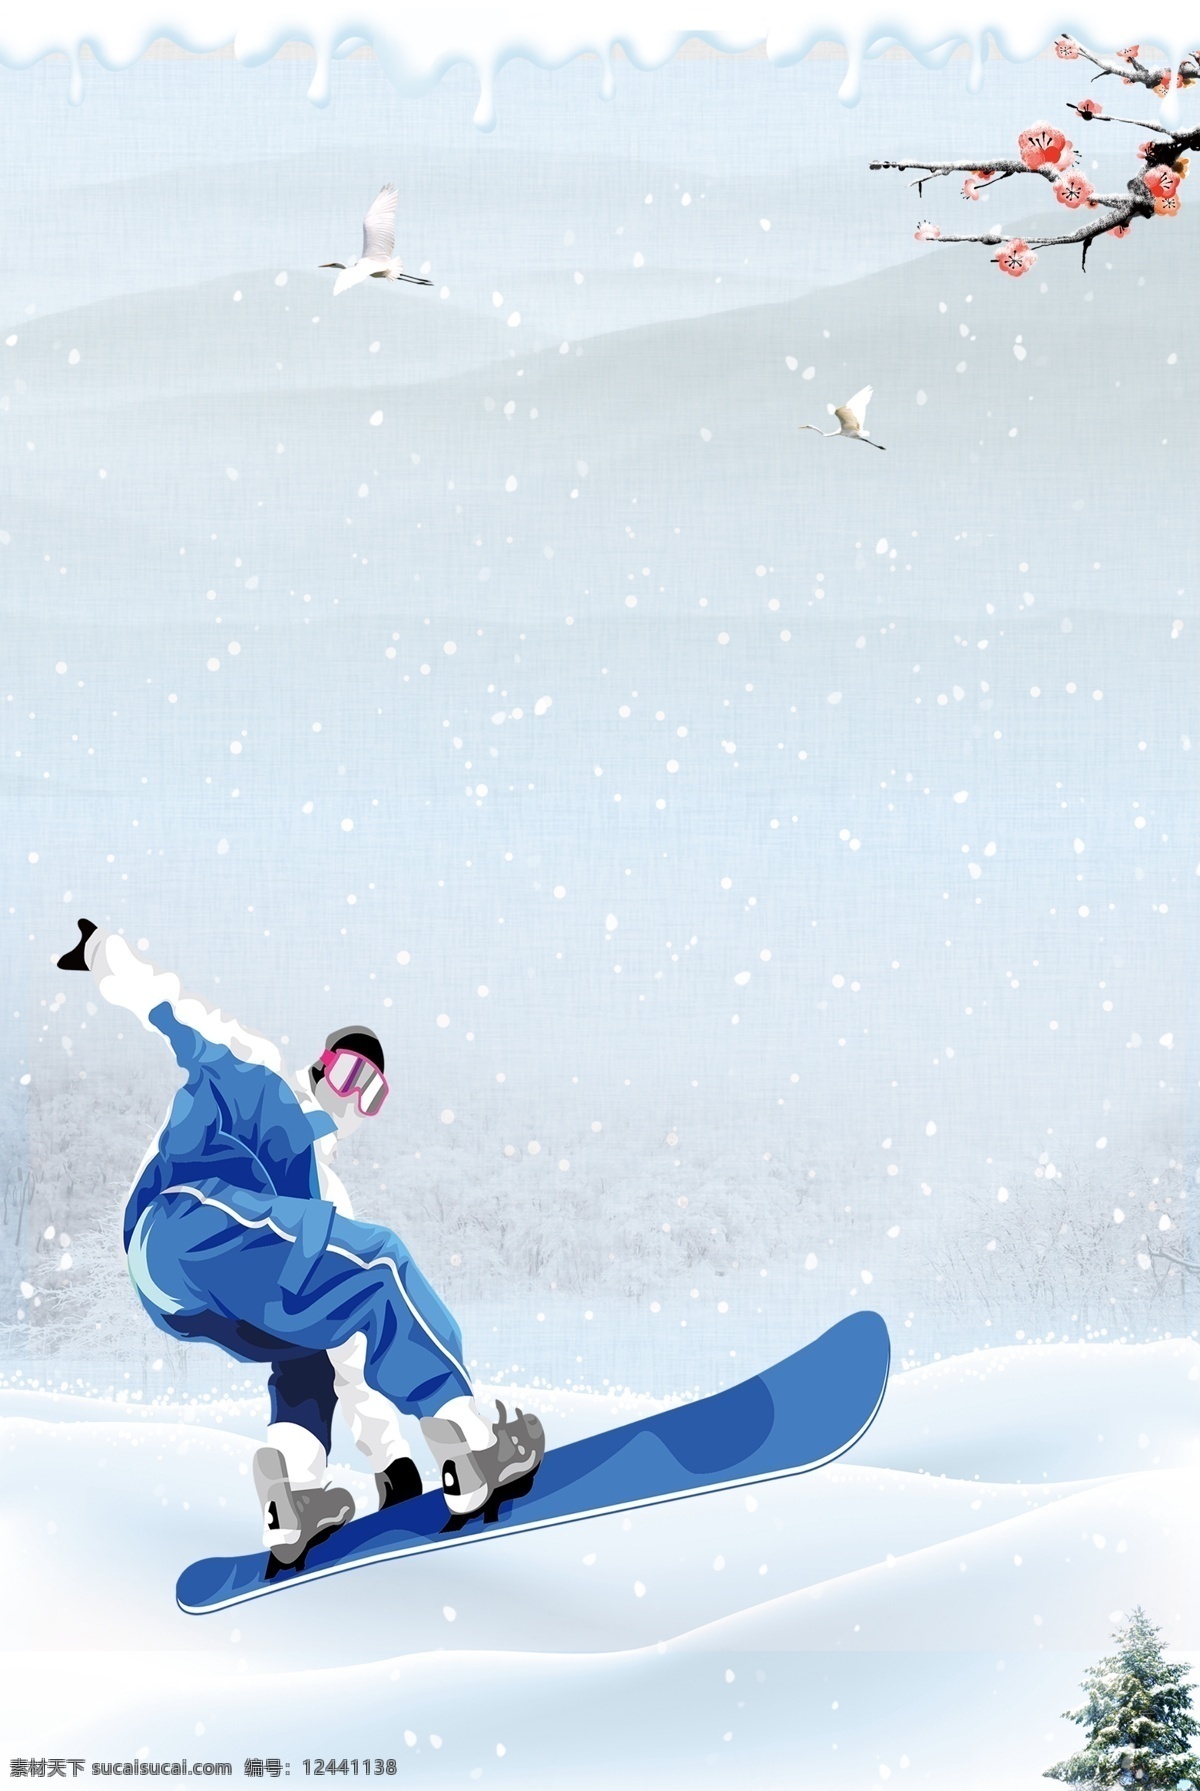 蓝色 体育运动 短道 速滑 培训 背景 滑板运动 滑板队 滑板俱乐部 滑板速滑 滑板旱冰